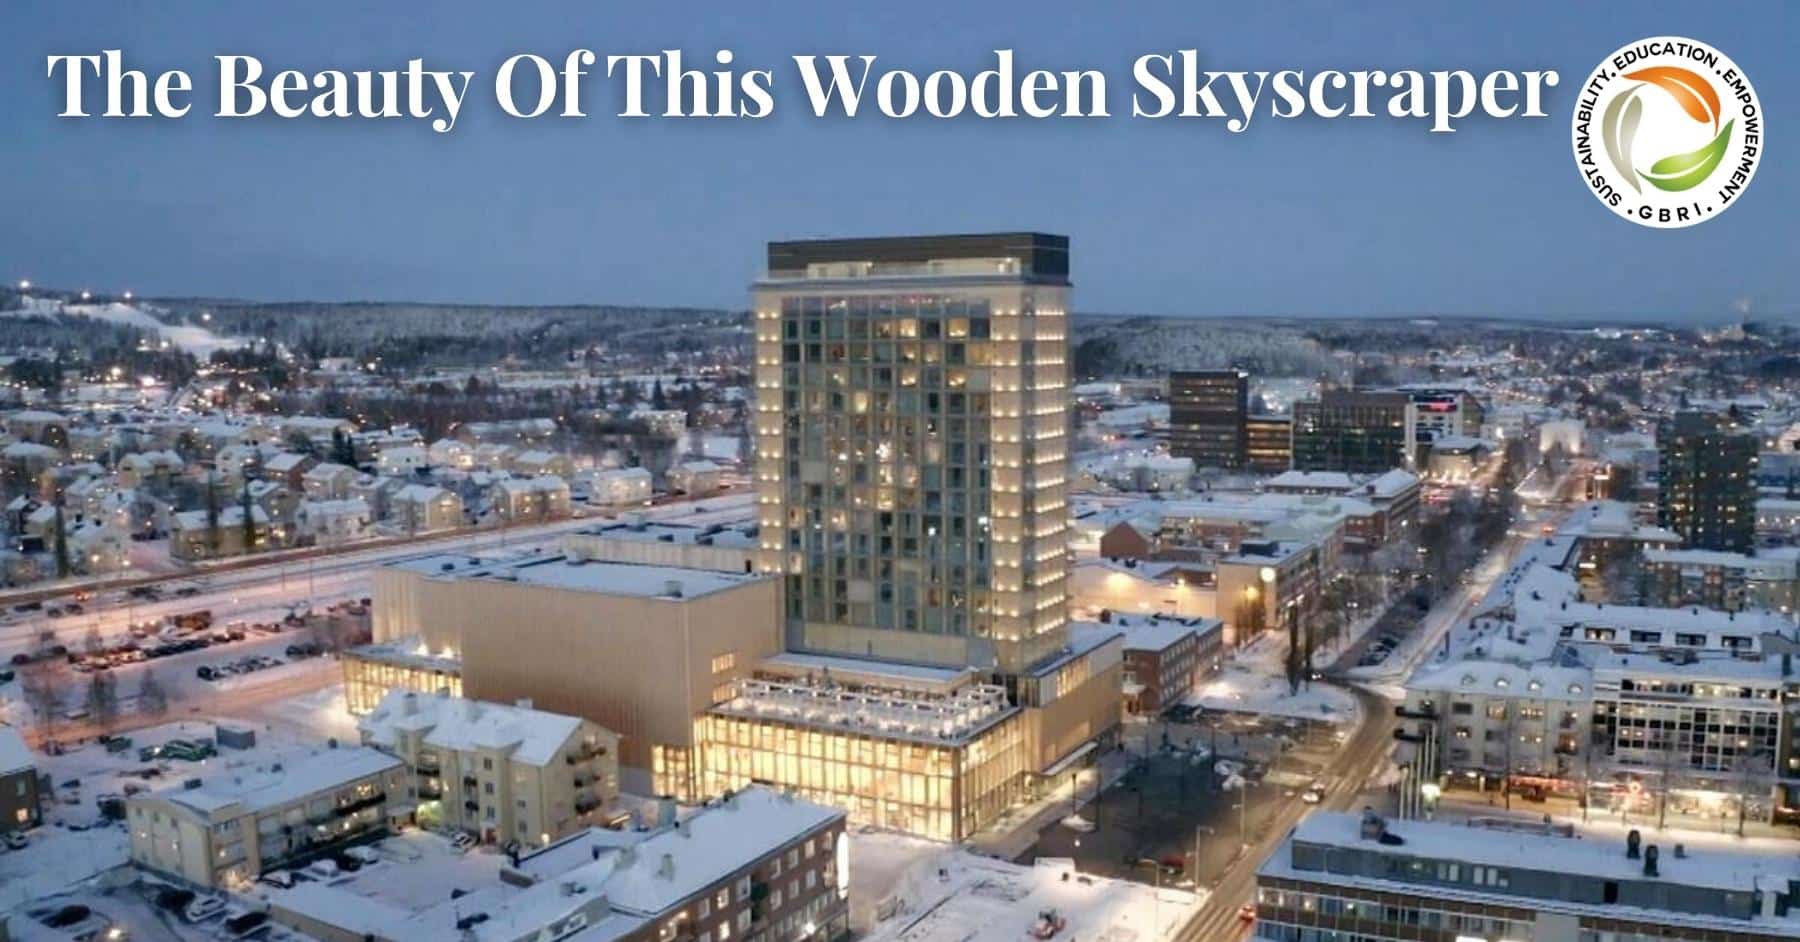 Beauty of Sweden's Wooden Skyscraper